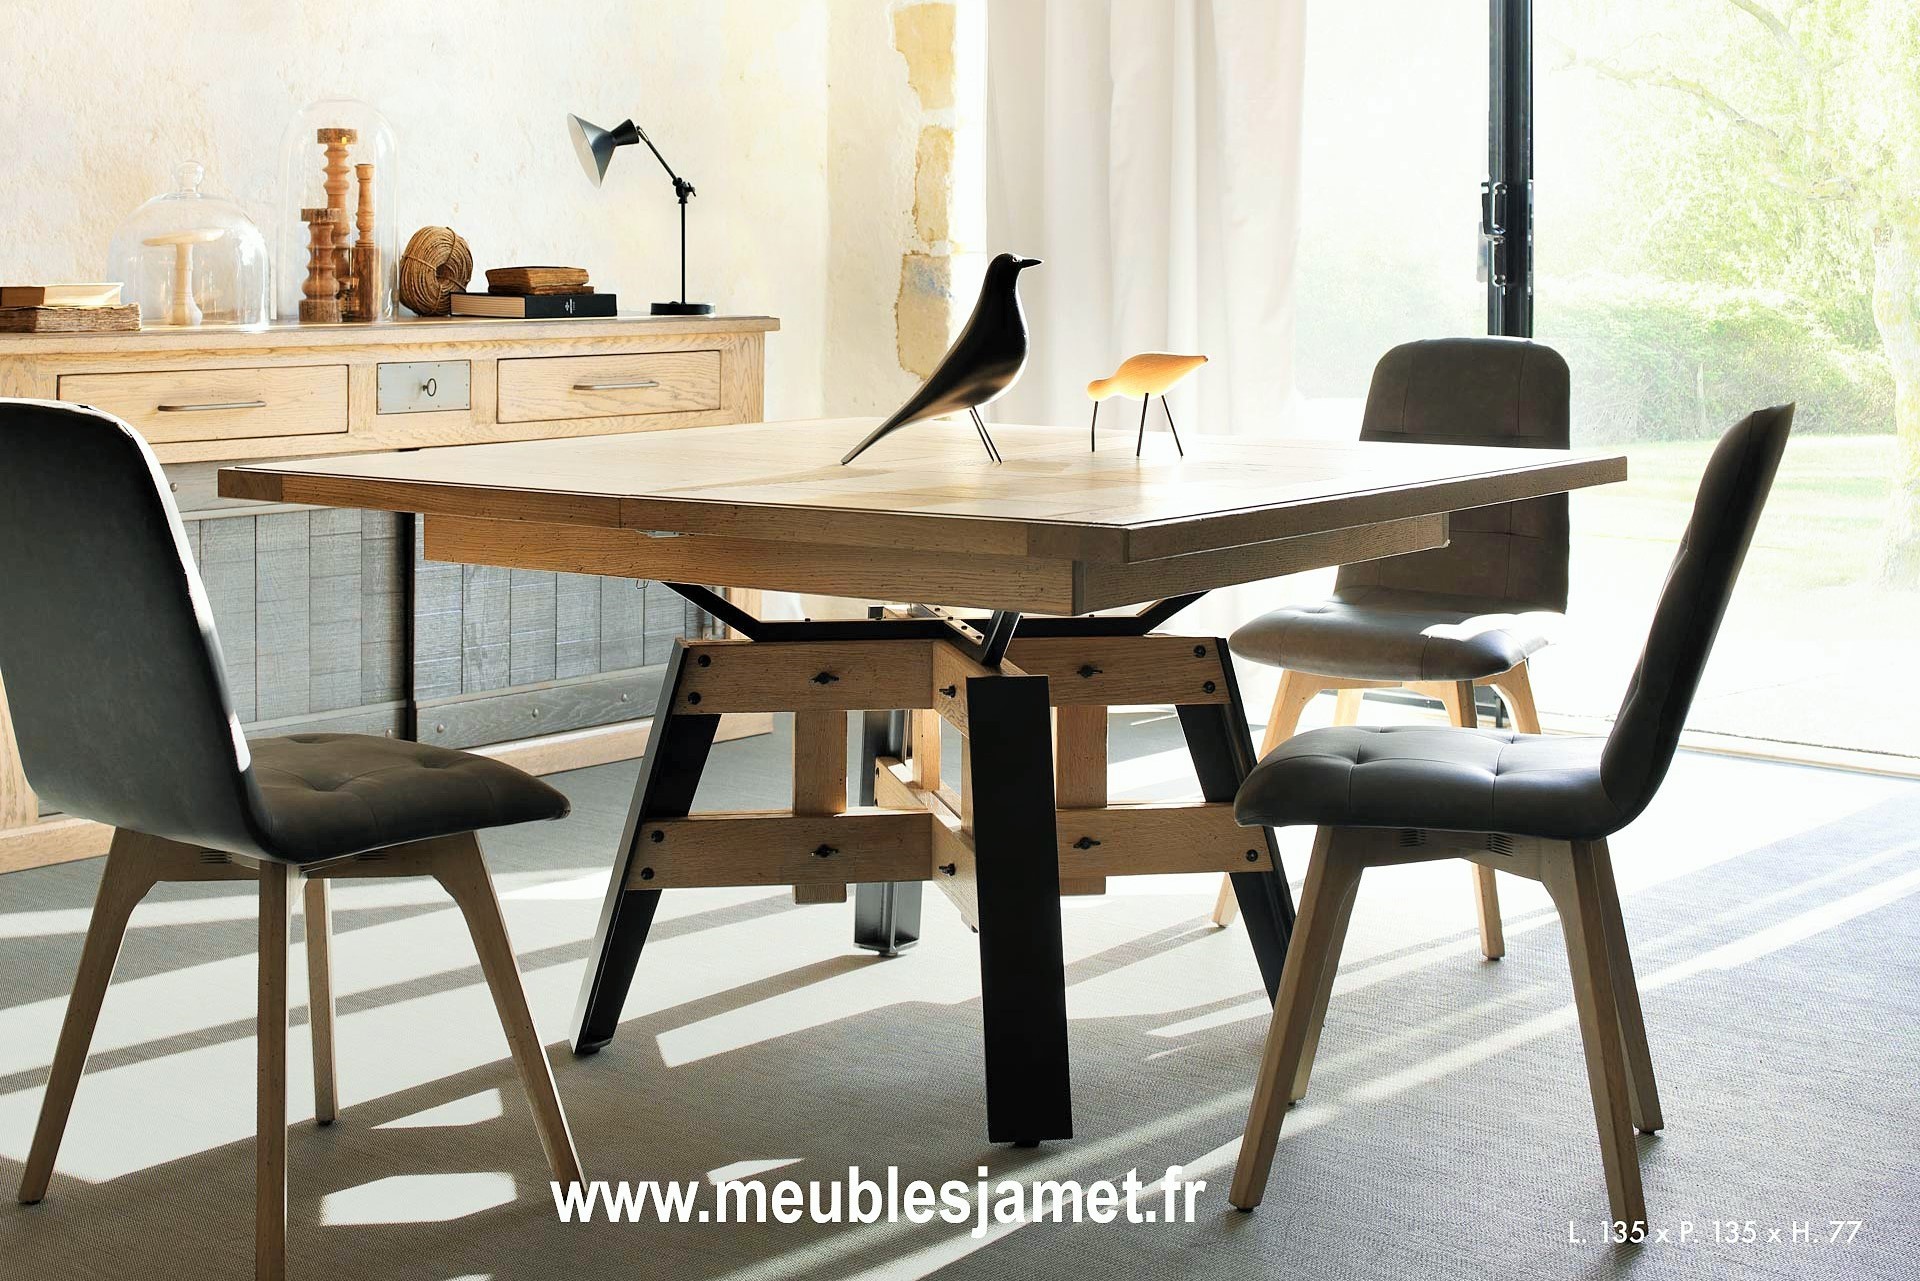 https://meublesjamet.fr/2673/table-de-repas-carree-style-atelier.jpg